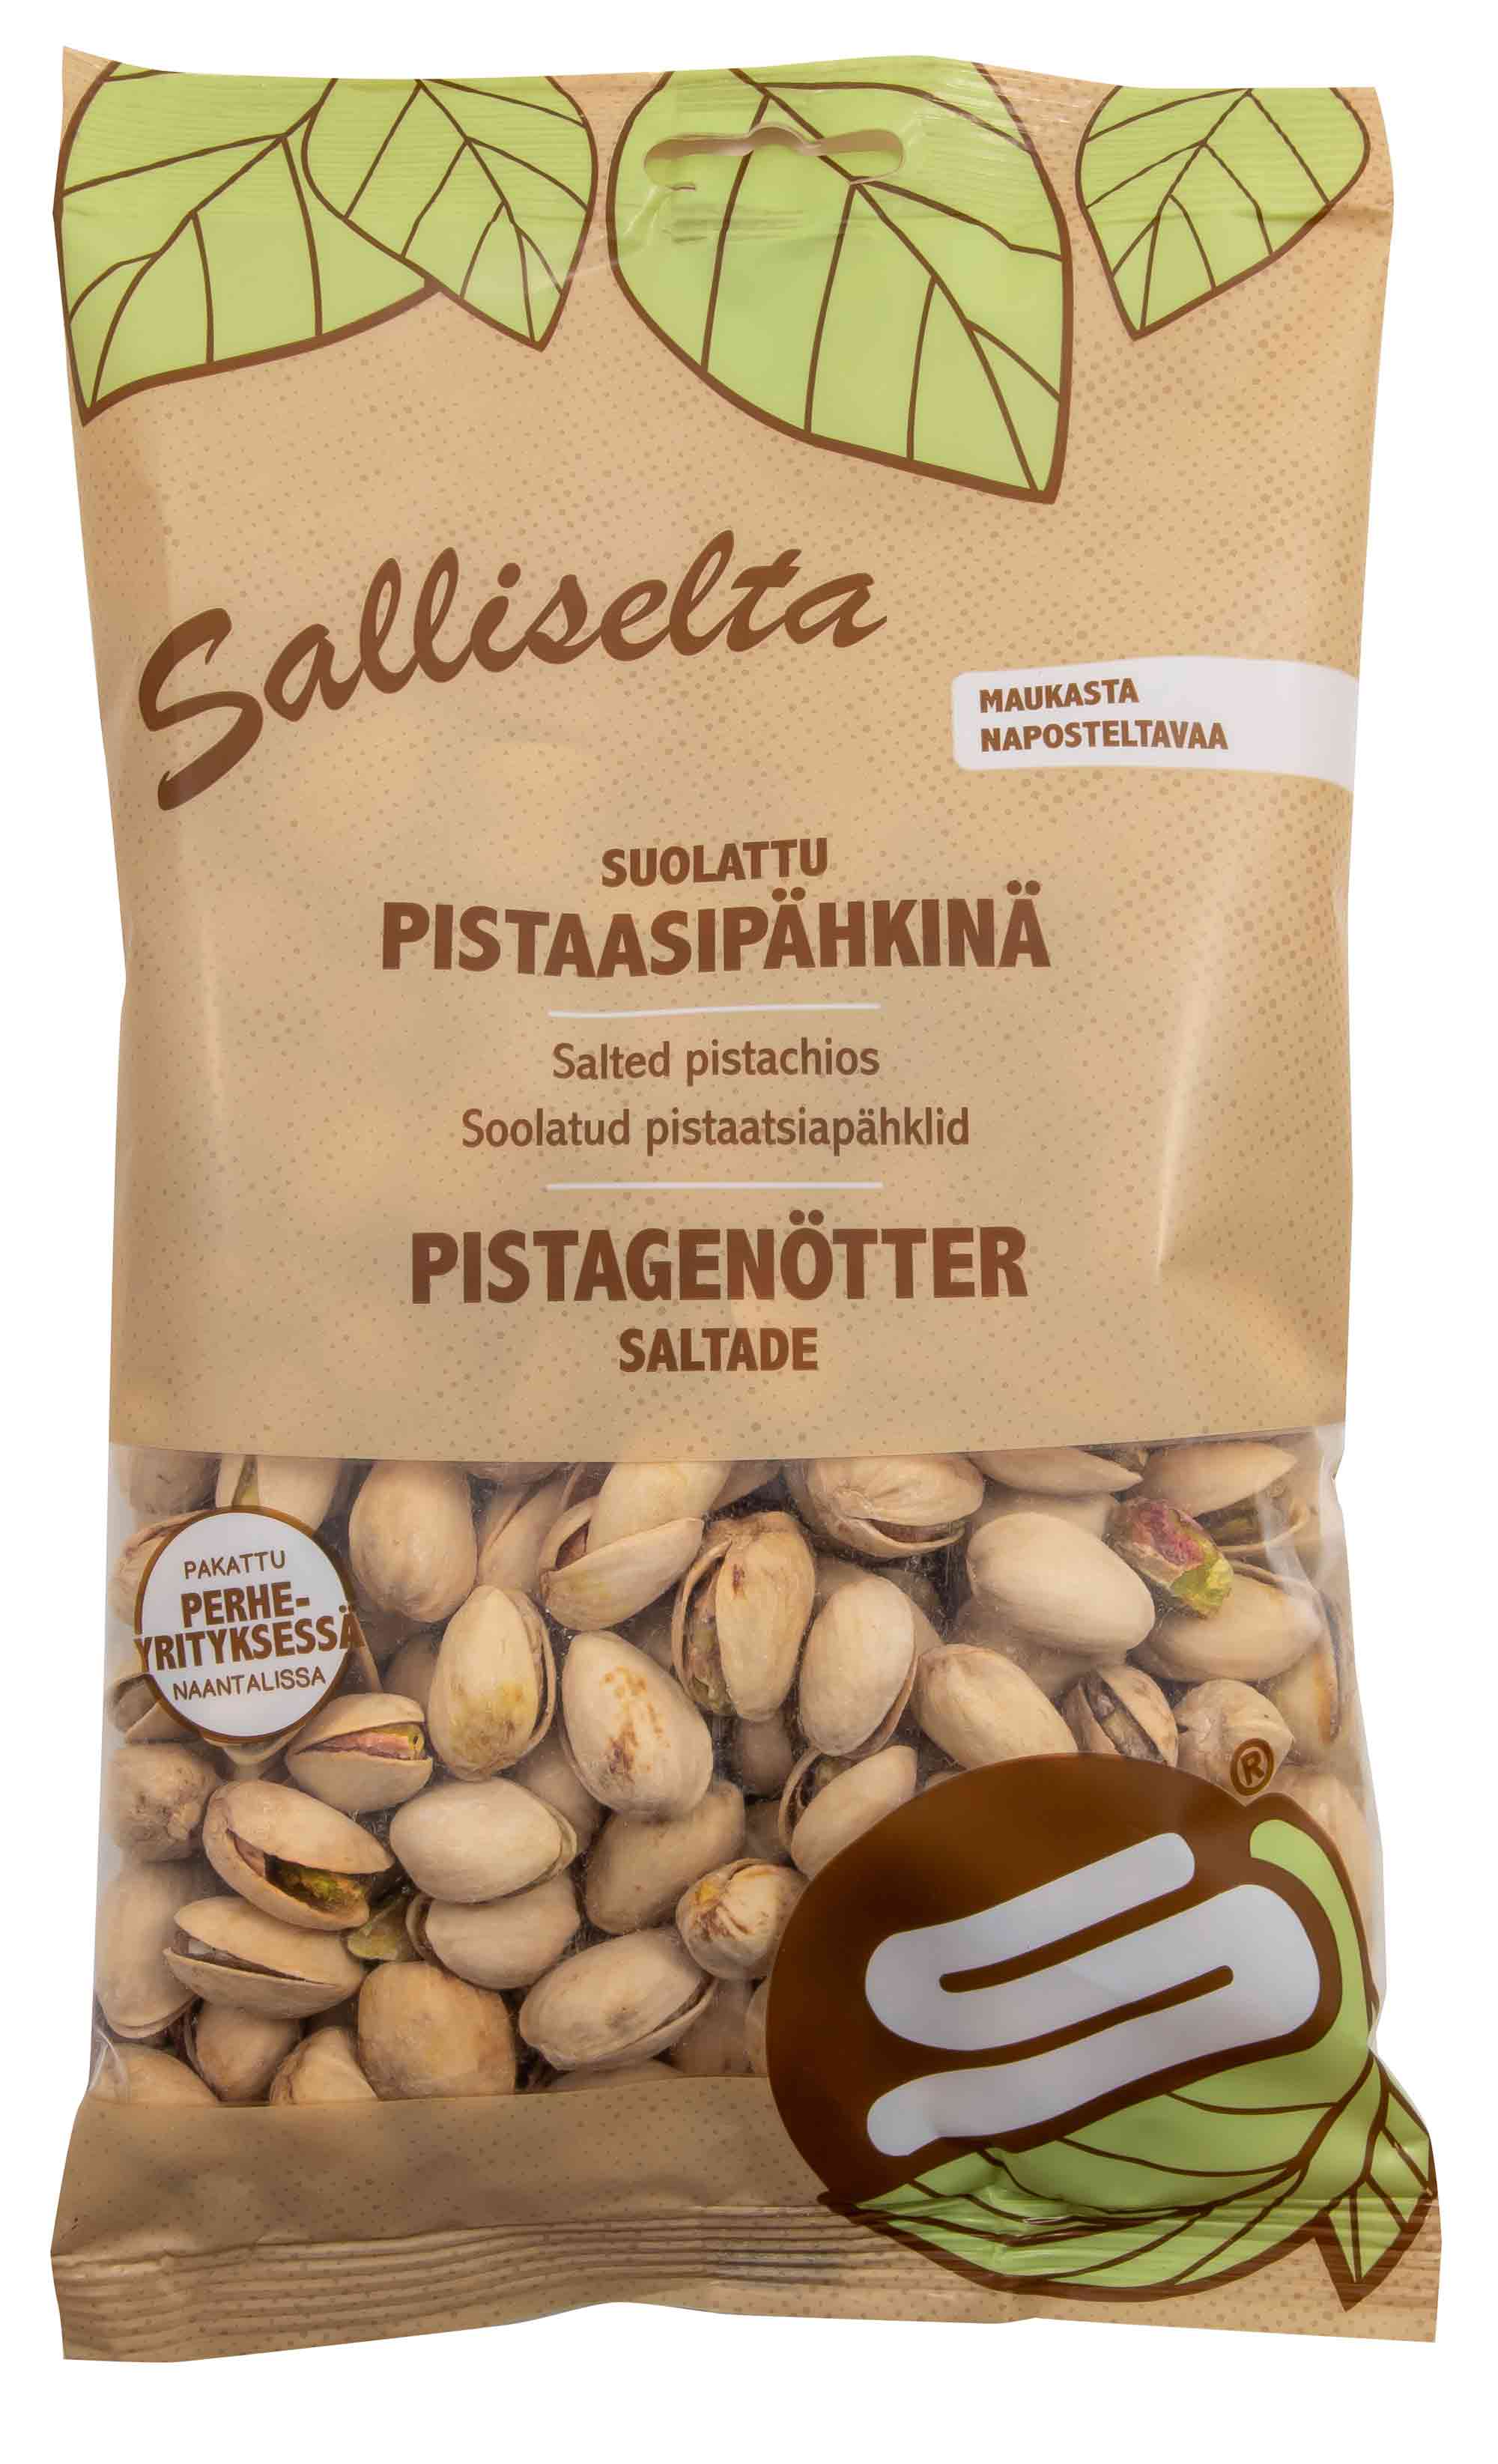 Pistagenötter saltade 250g